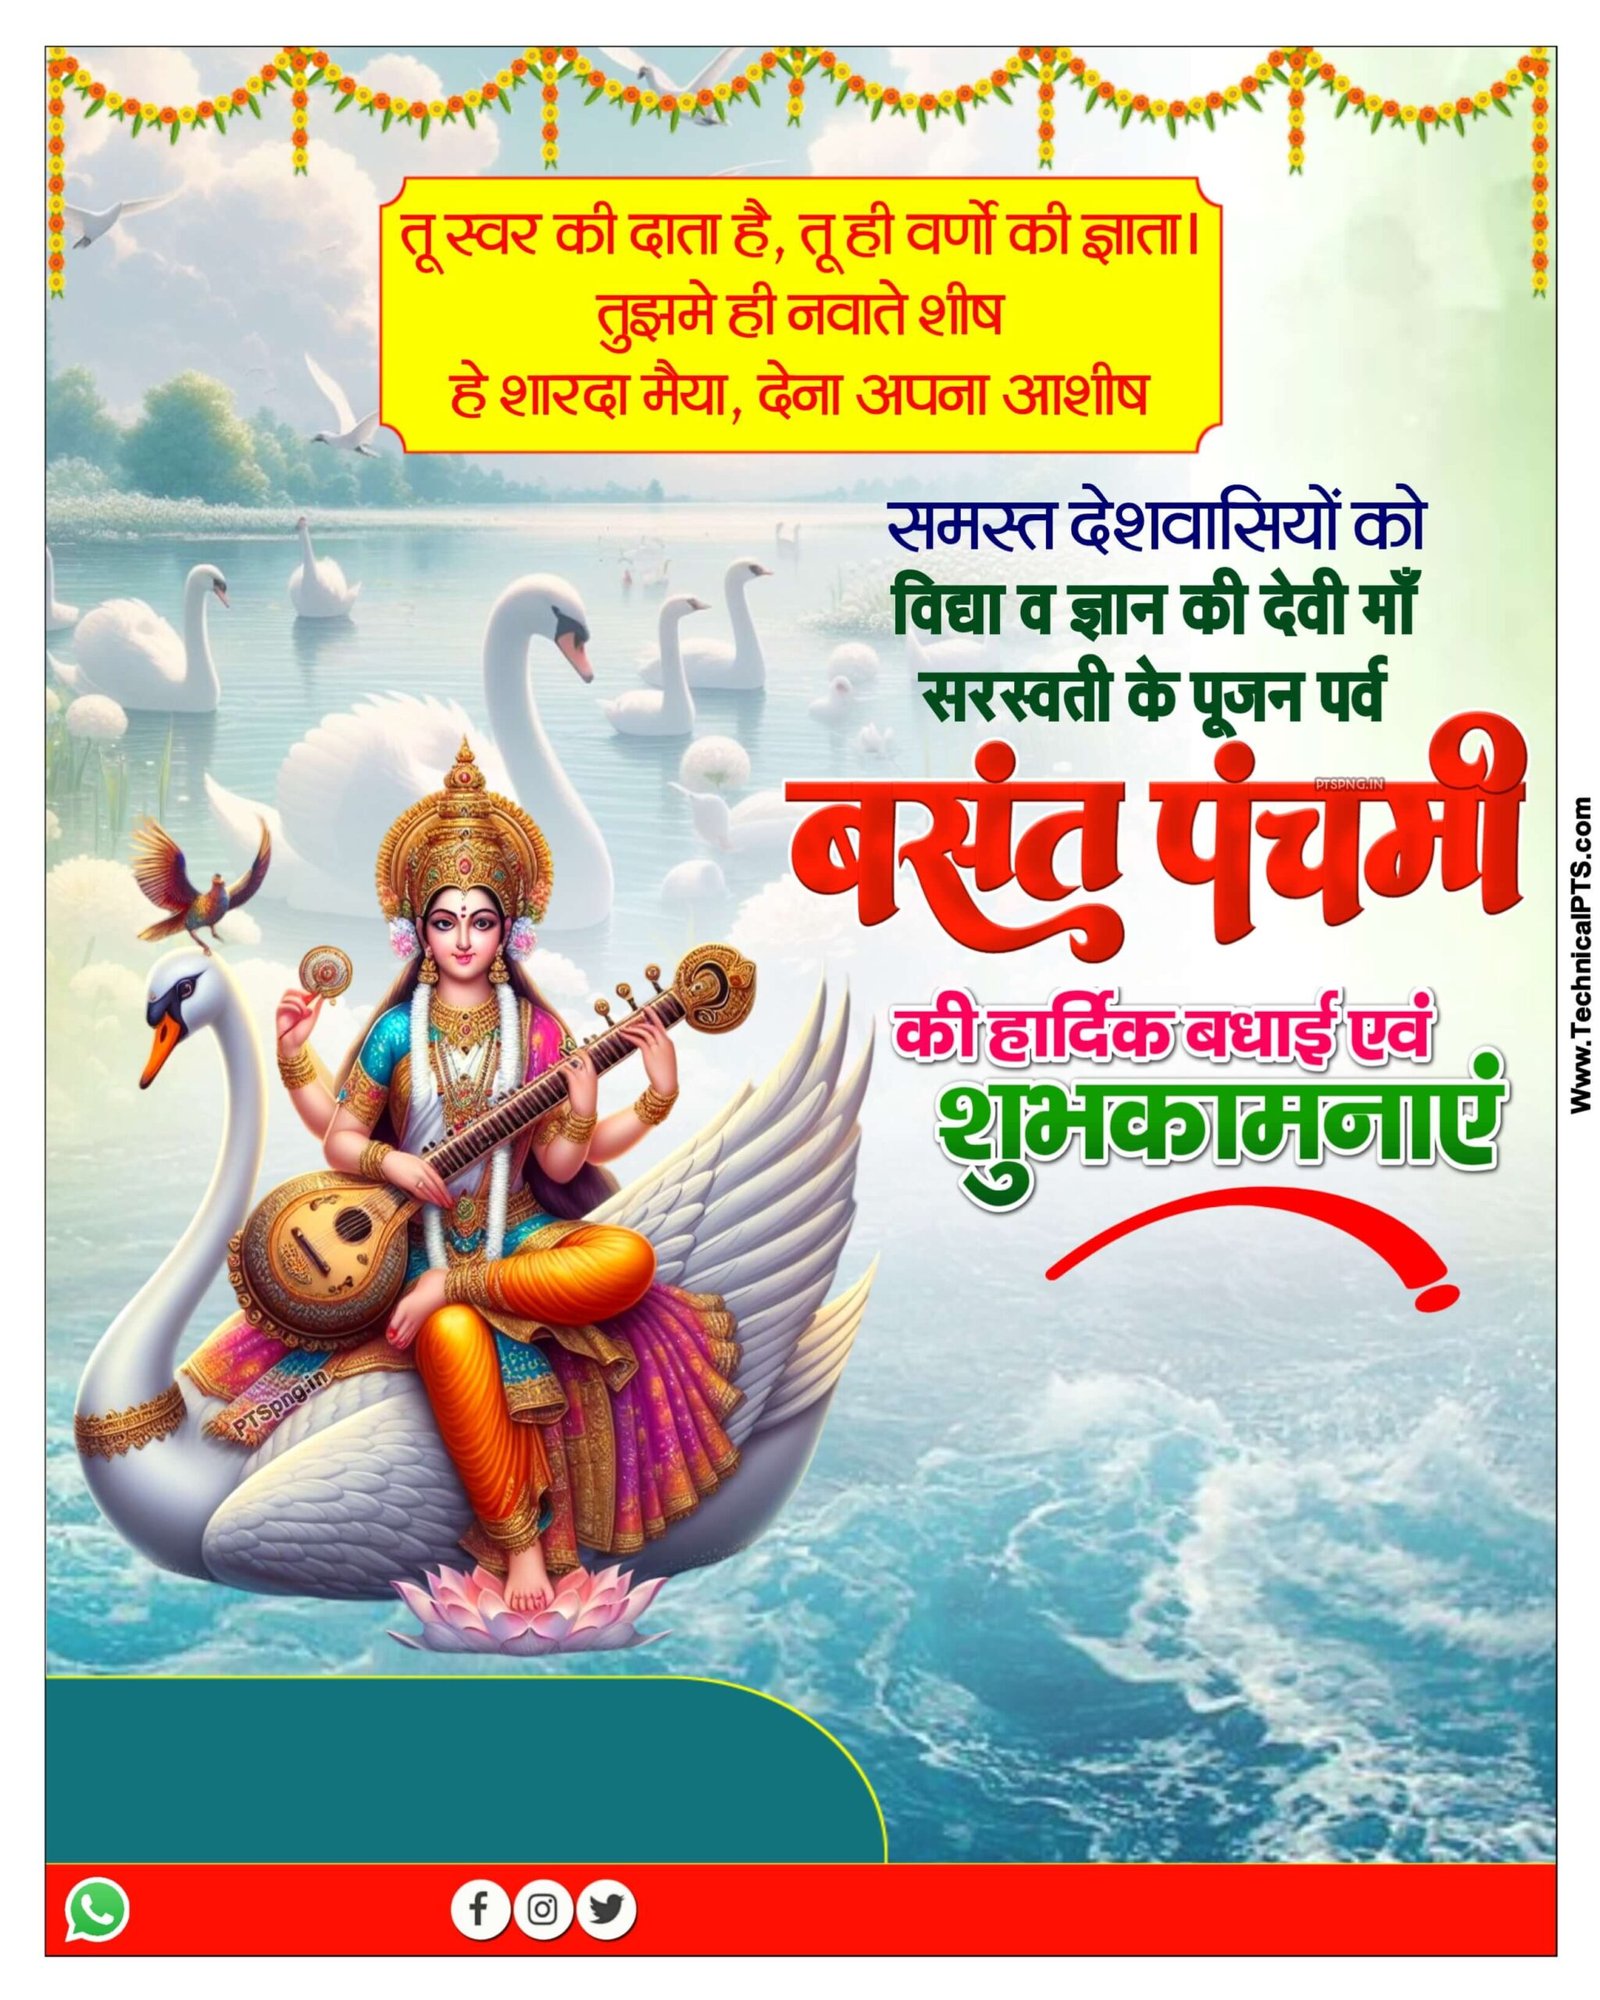 Basant panchmi poster Kaise banaen mobile se| Saraswati Puja banner editing in mobile|  Basant panchmi banner editing PNG background download